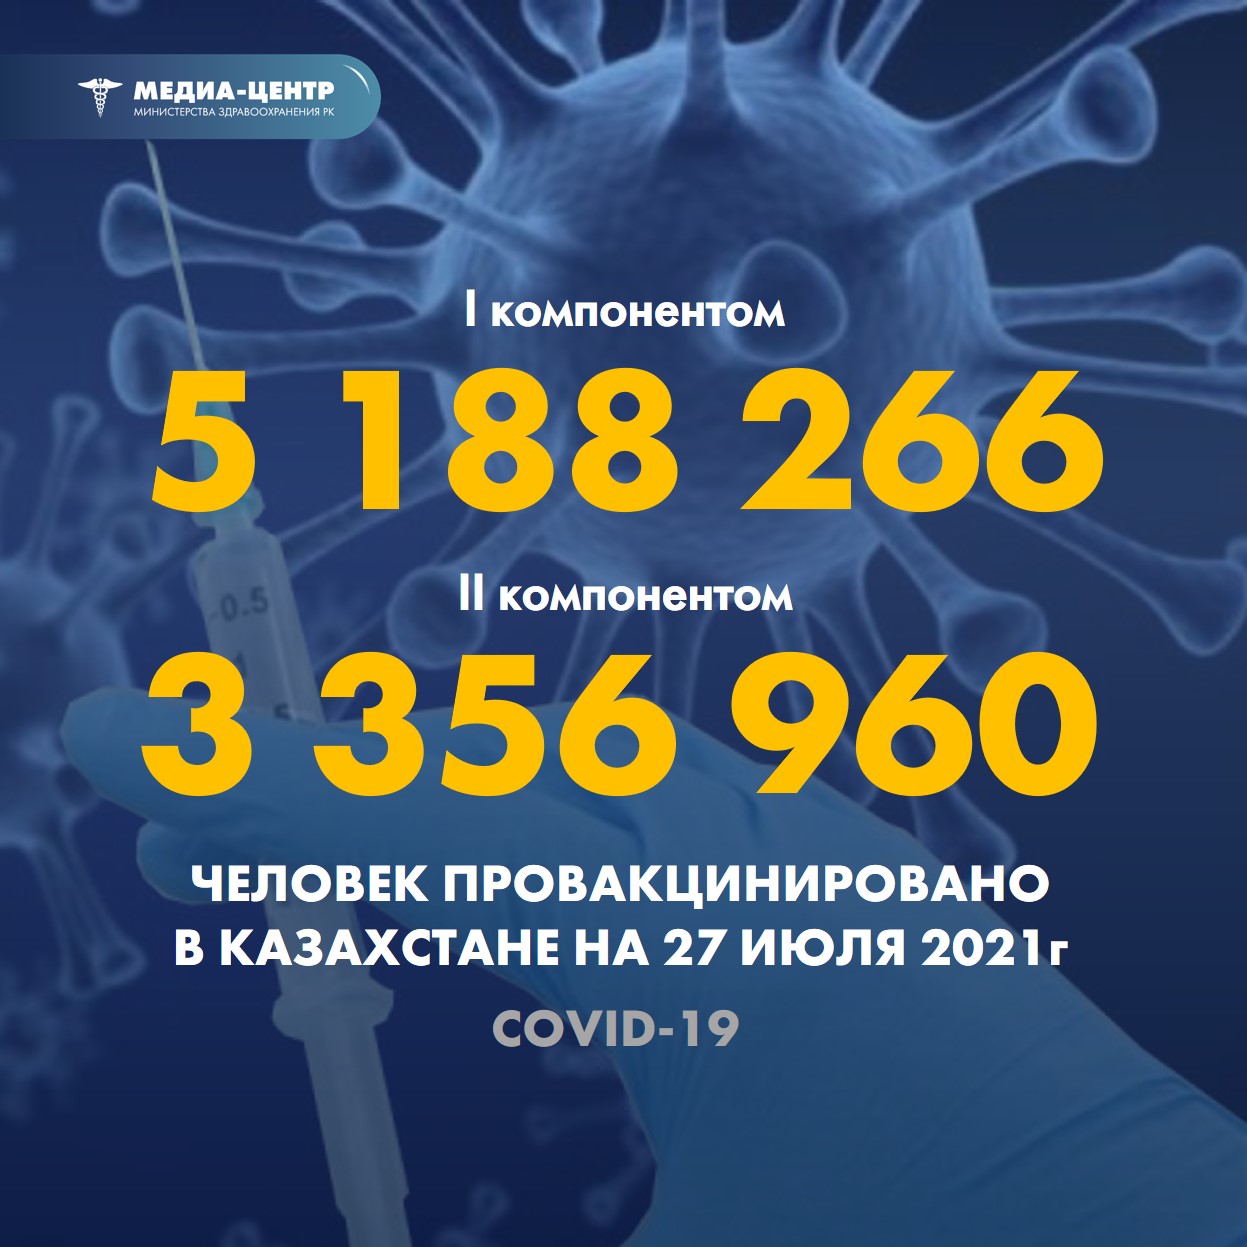 I компонентом 5 188 266 человек провакцинировано в Казахстане на 27 июля 2021 г, II компонентом 3 356 960 человек.